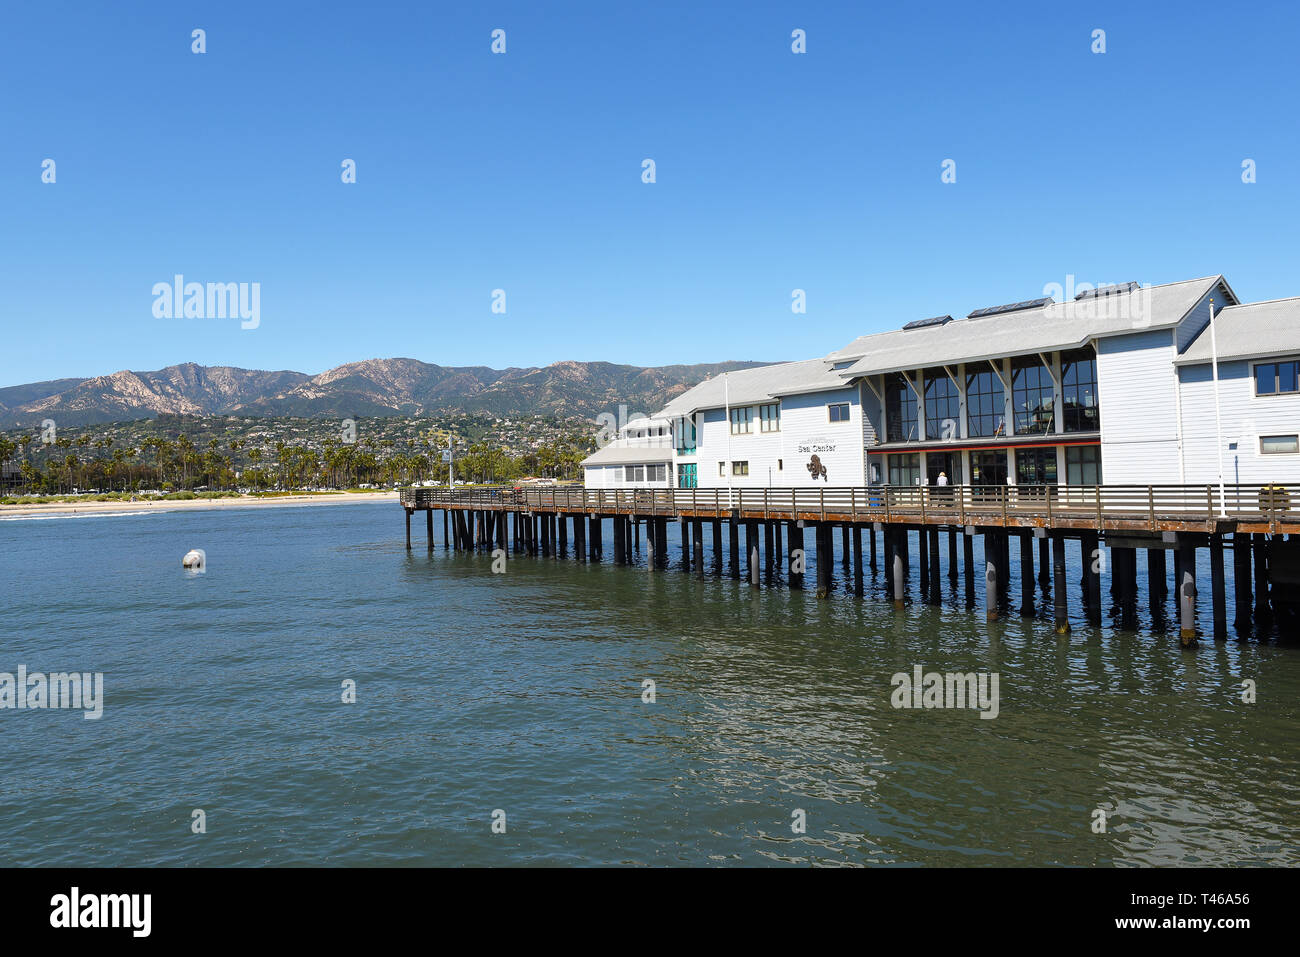 SANTA BARBARA, California - 11 Aprile 2019: Santa Barbara Museo di Storia naturale centro del mare si trova su Stearns Wharf. Foto Stock